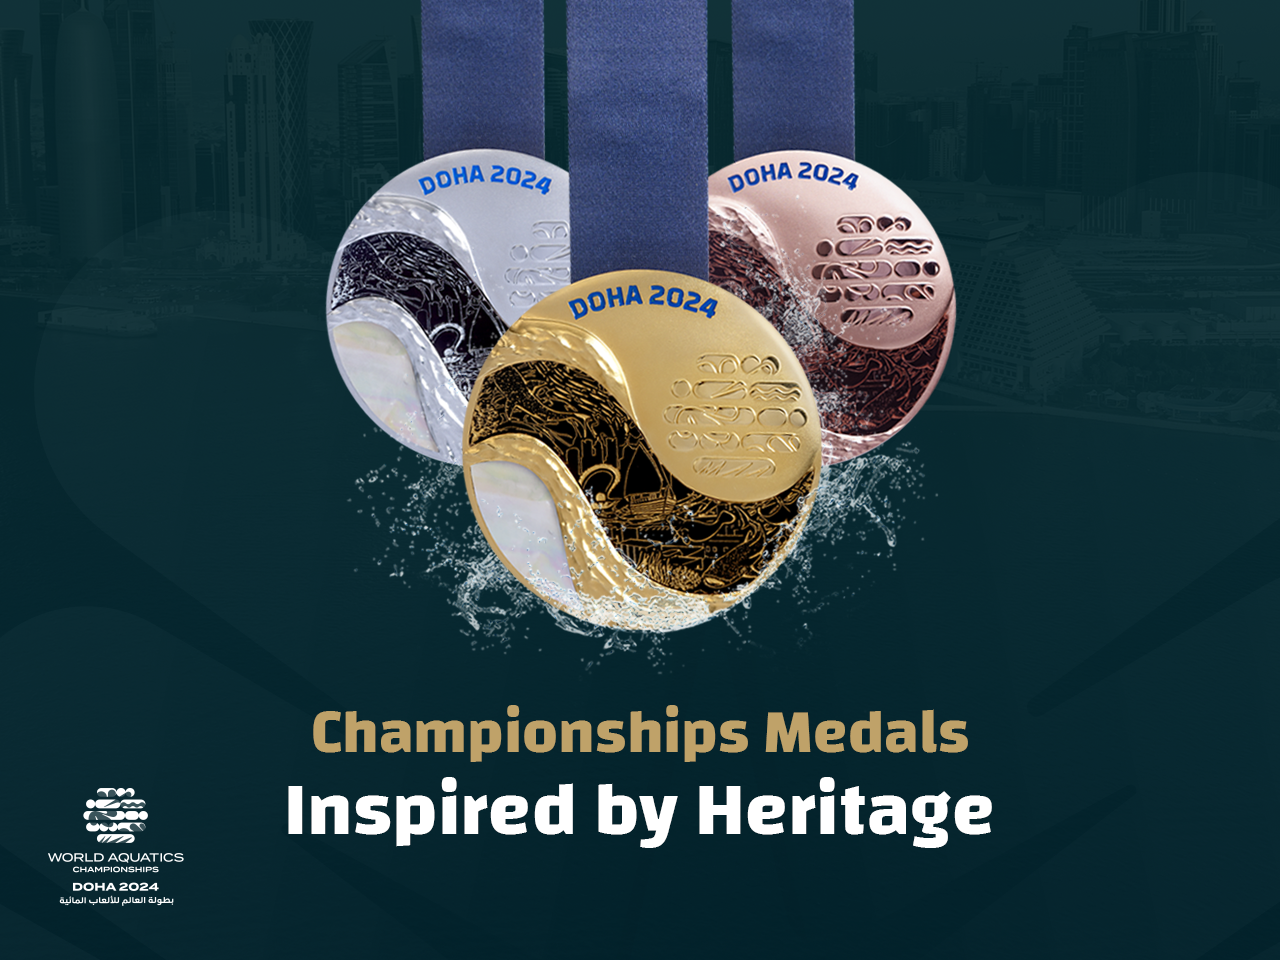 The 2024 World Aquatics Championships in Doha and its dazzling new medals. WORLD AQUATICS